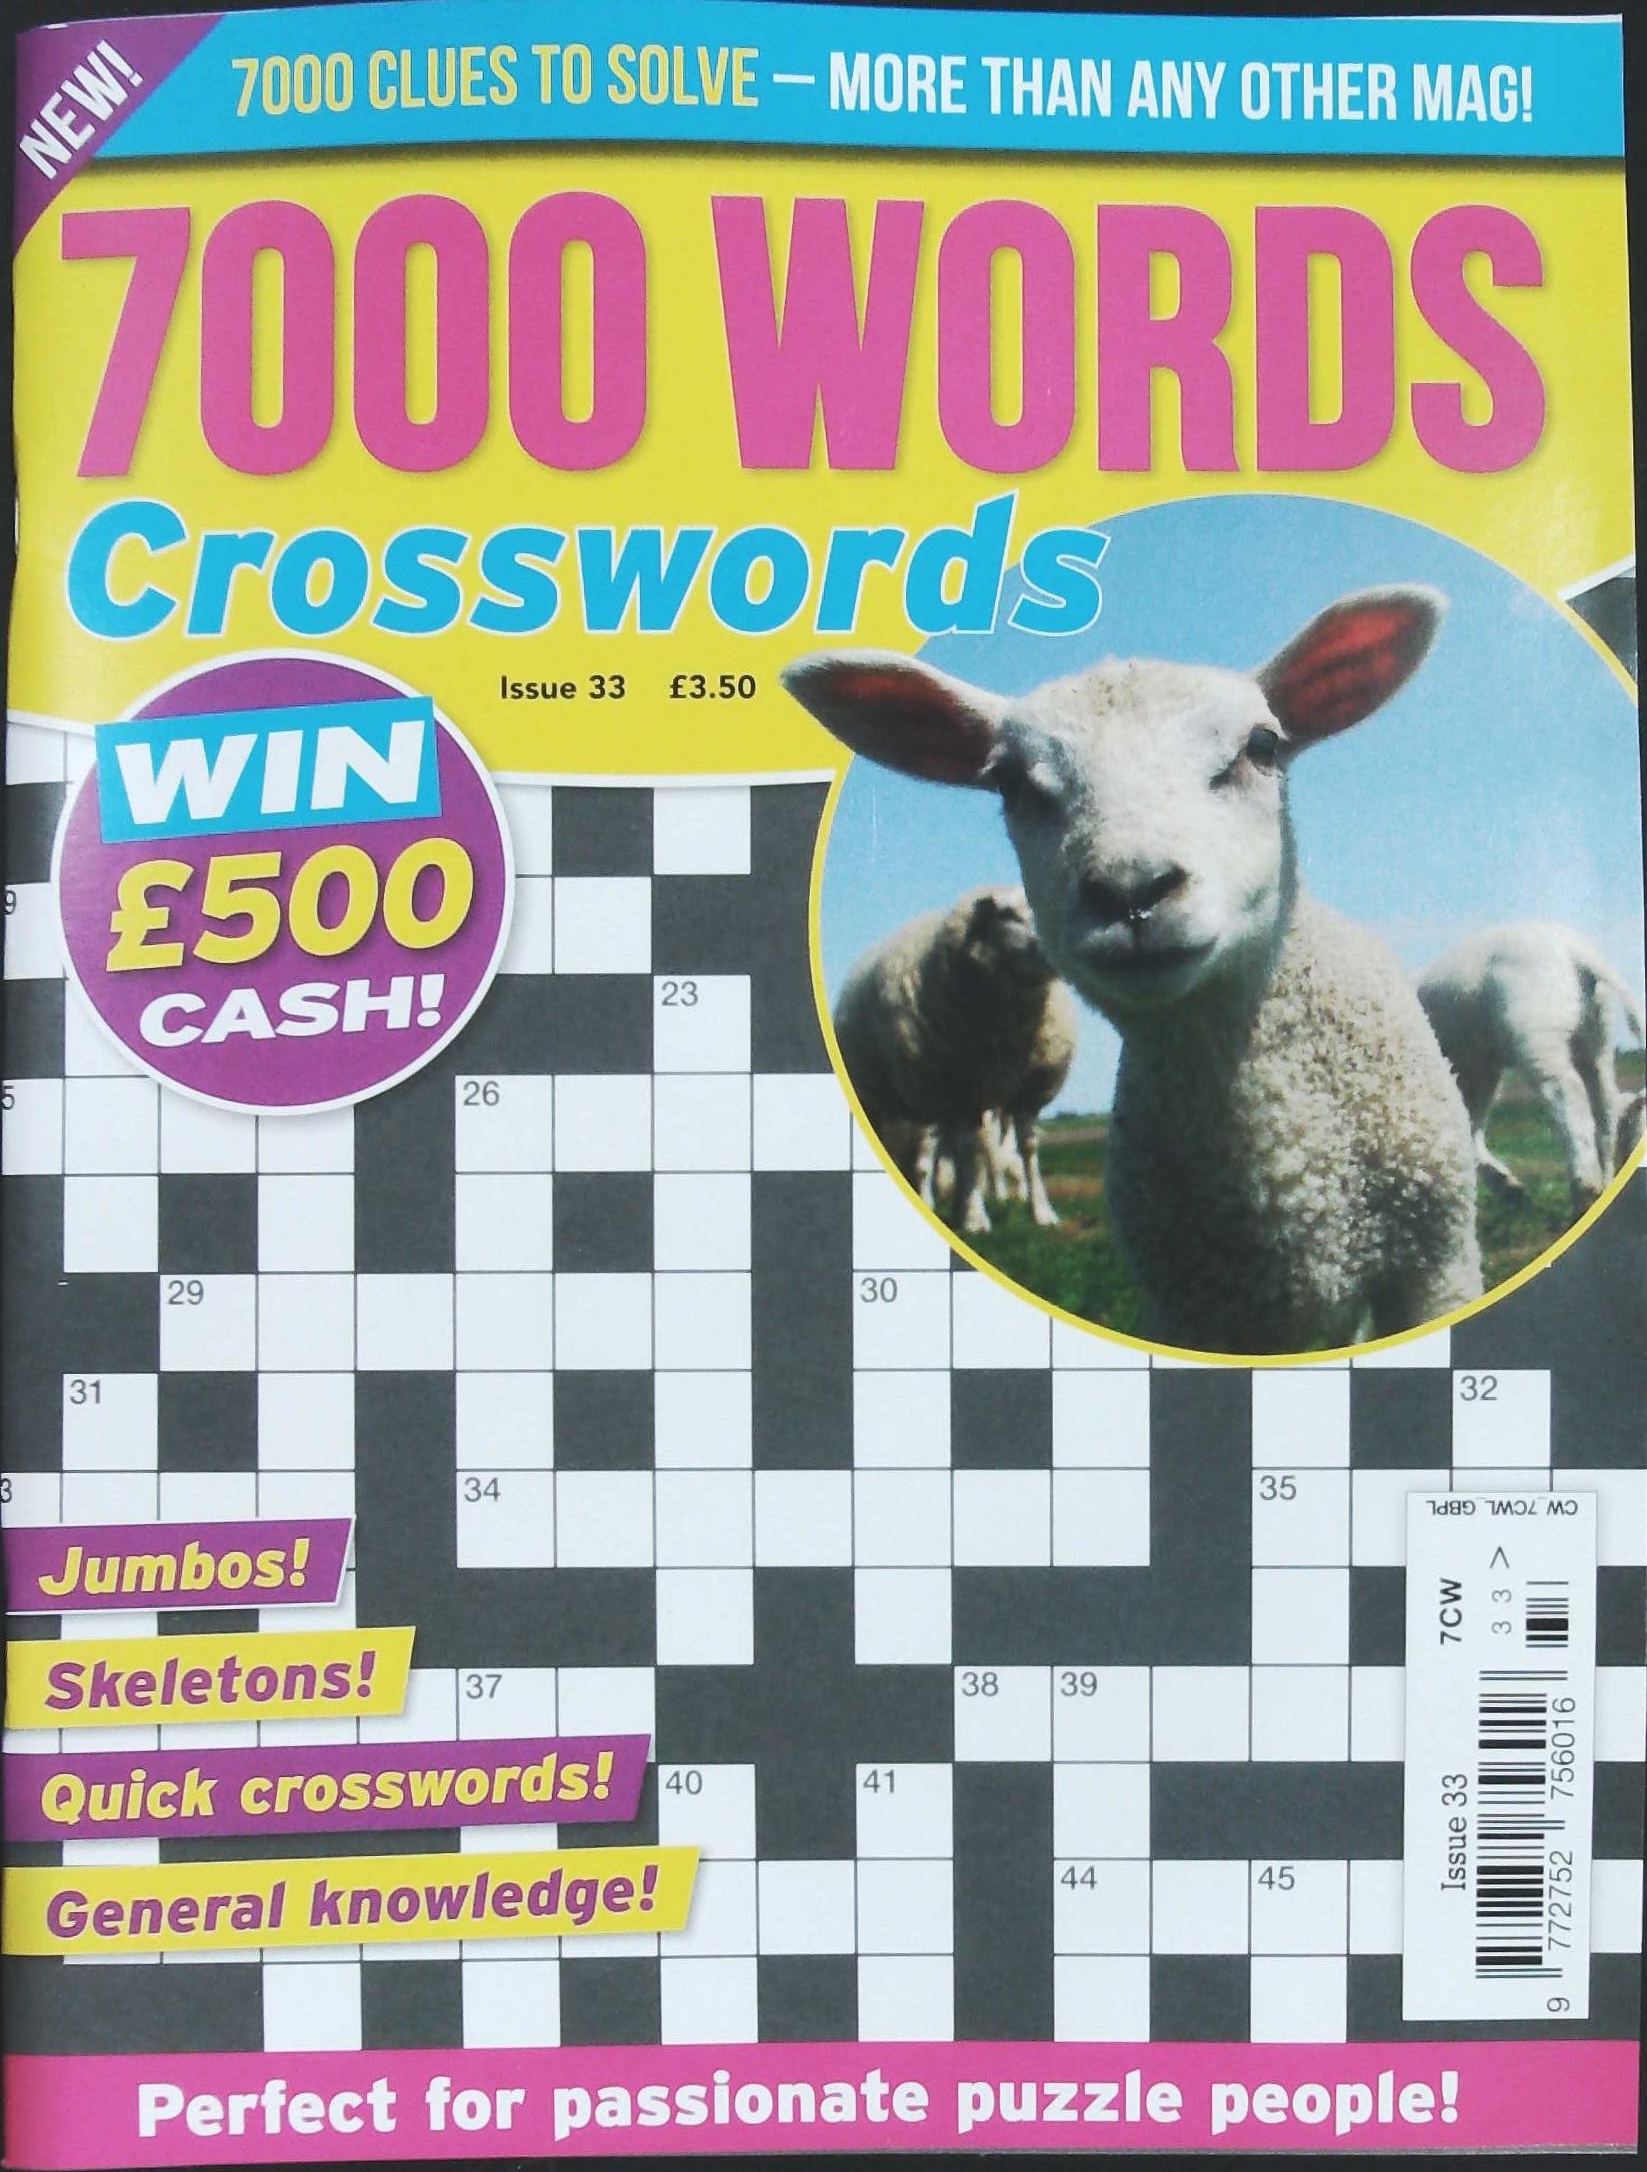 7000 WORD CROSSWORDS